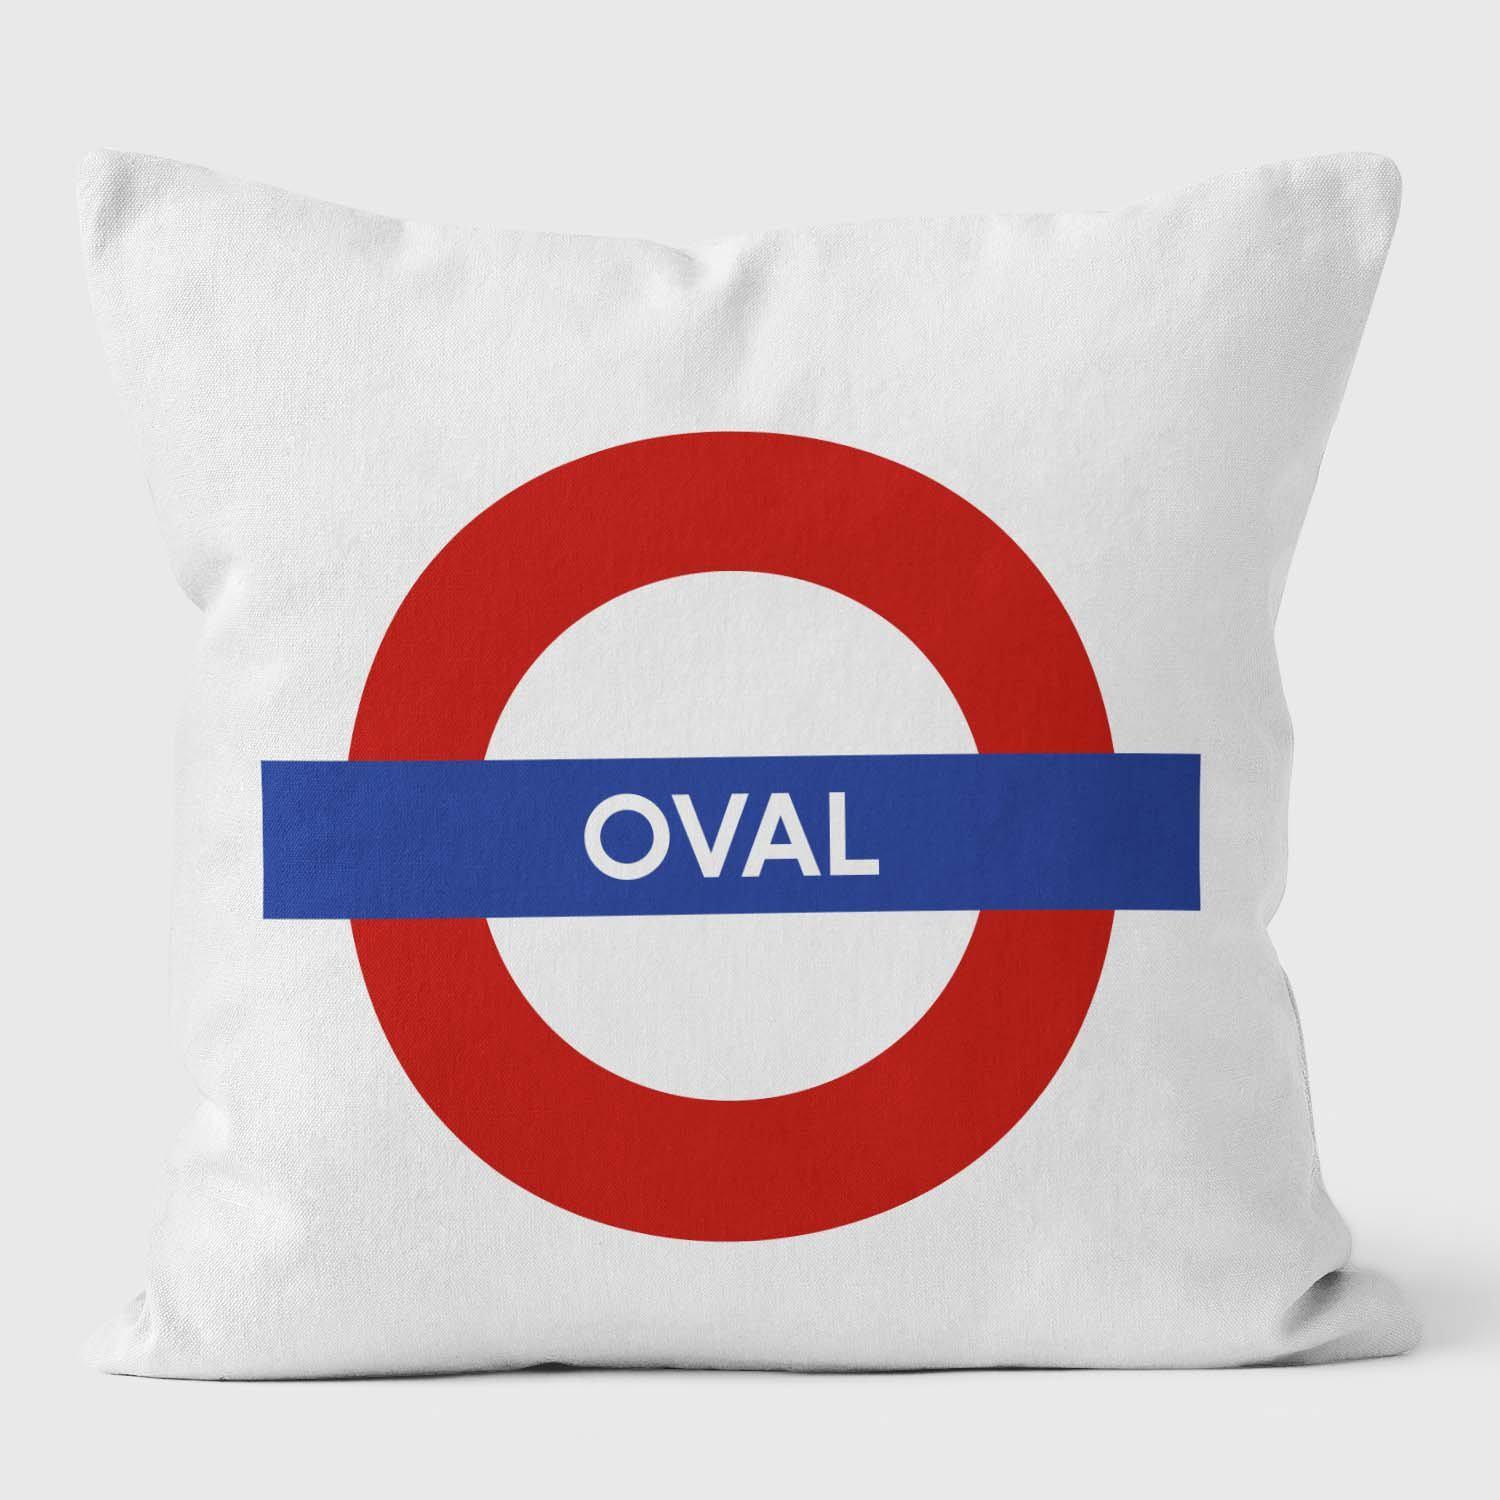 Oval London Underground Tube Station Roundel Cushion - Handmade Cushions UK - WeLoveCushions